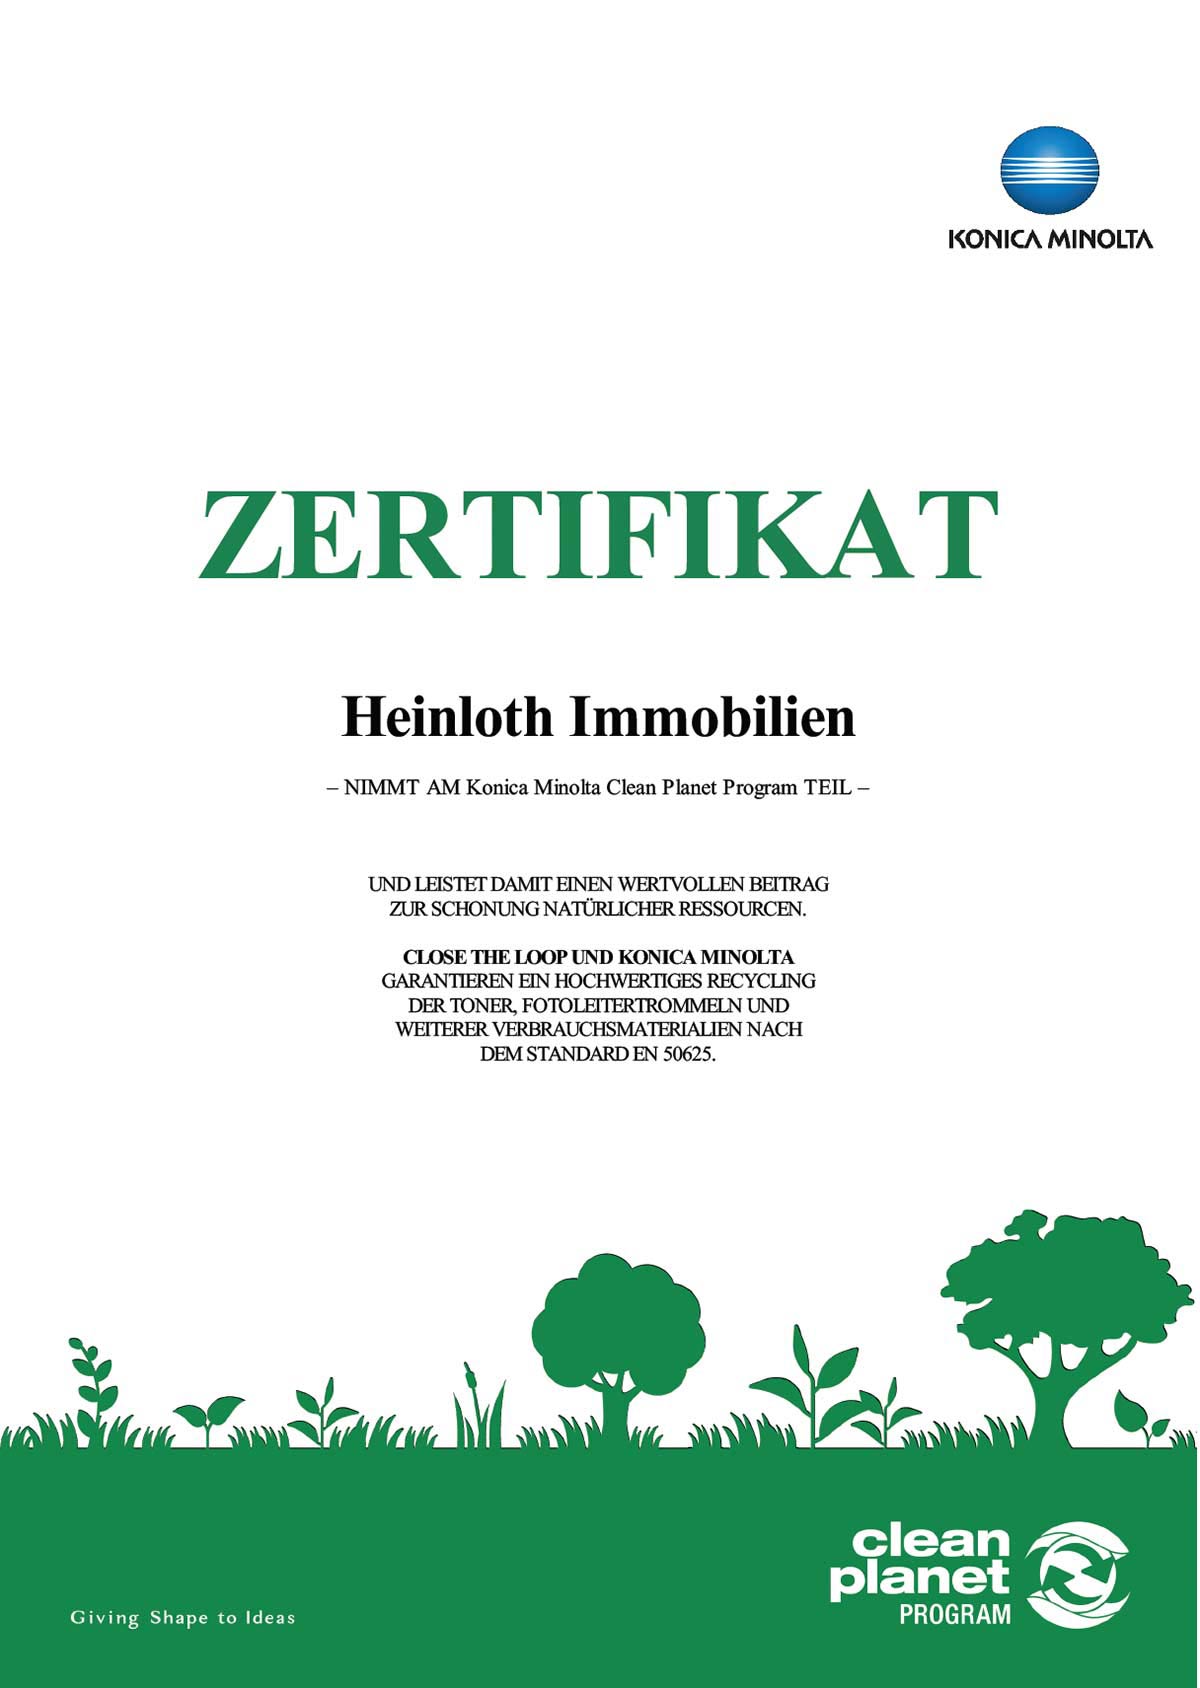 Die heinloth-Immobilienverwaltung GmbH nimmt am Konica Minolta Clean Planet Programm teil.